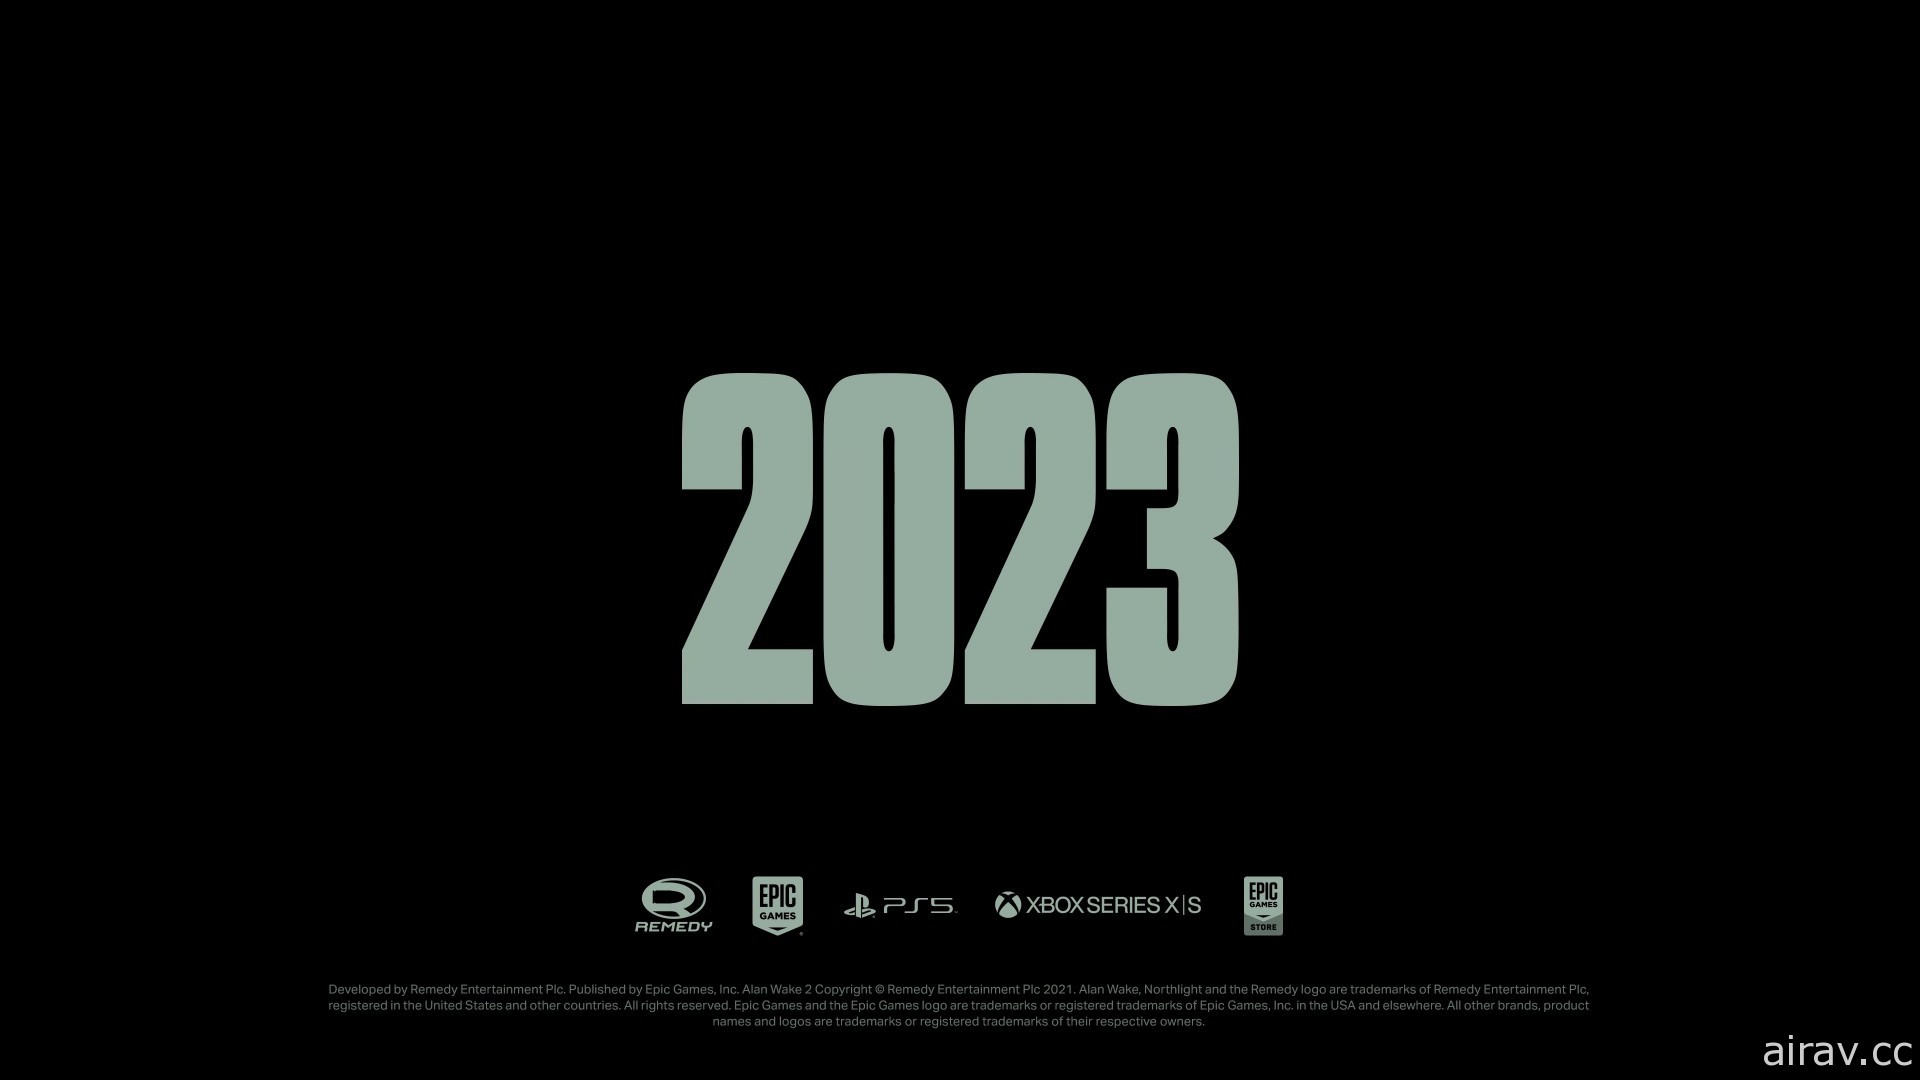 【TGA 21】《心灵杀手》续作《心灵杀手 2》预计 2023 年推出 释出预告影片